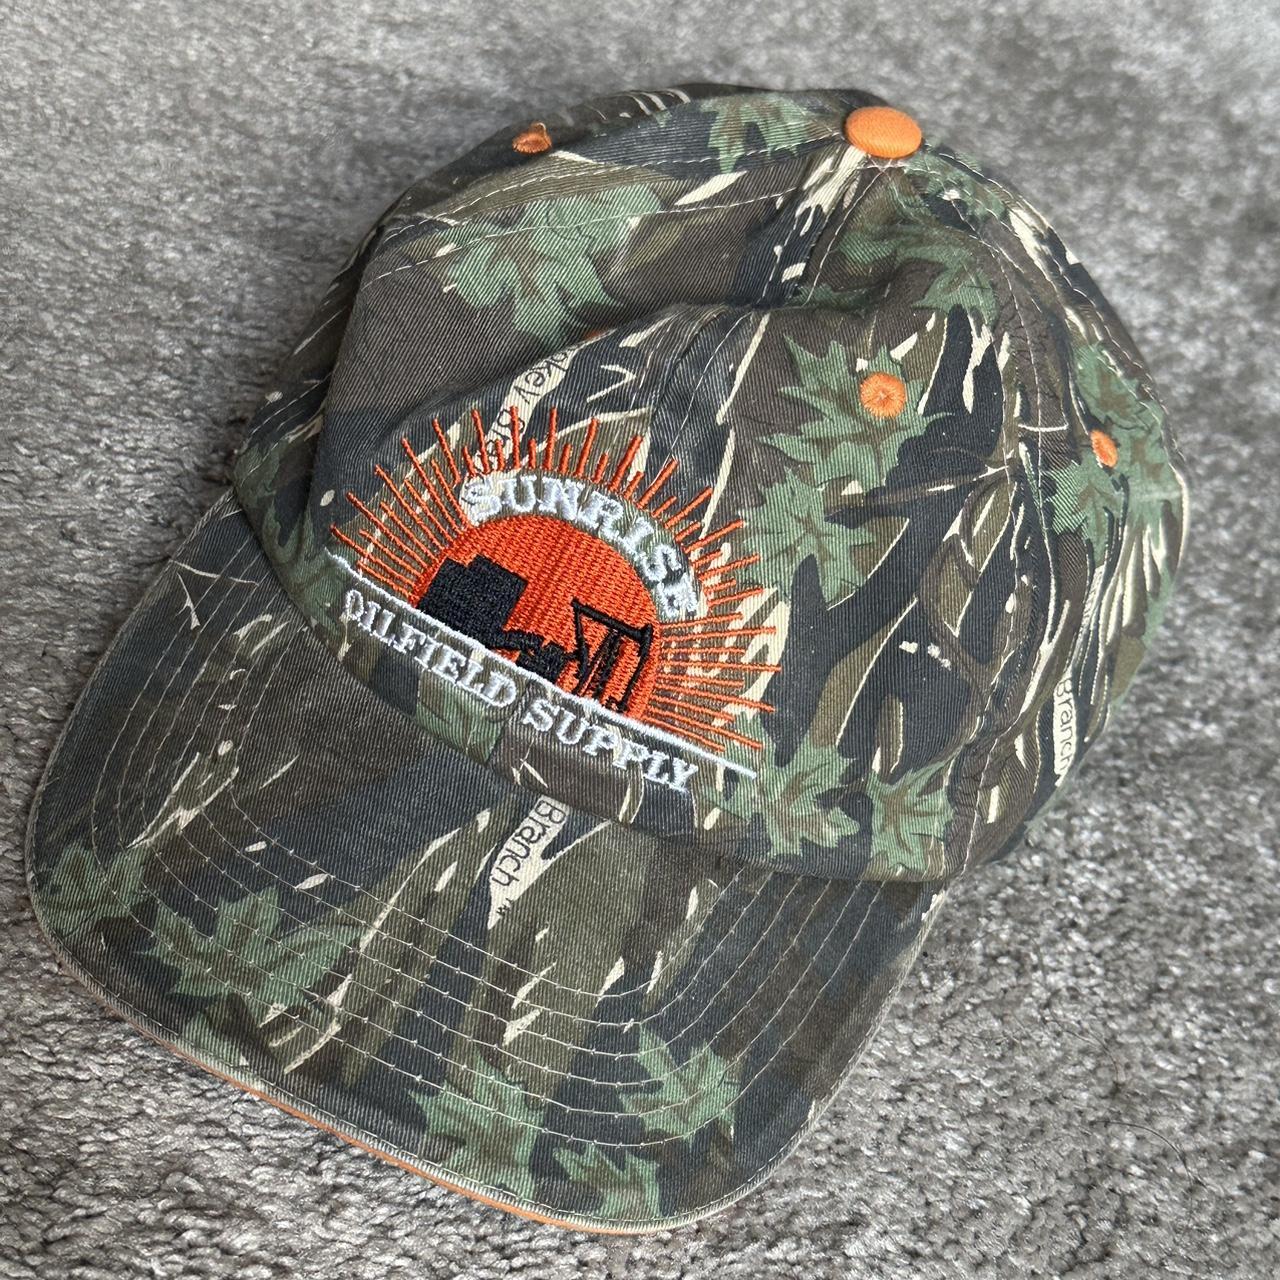 Camouflage Supreme hat. Brand-new literally worn - Depop